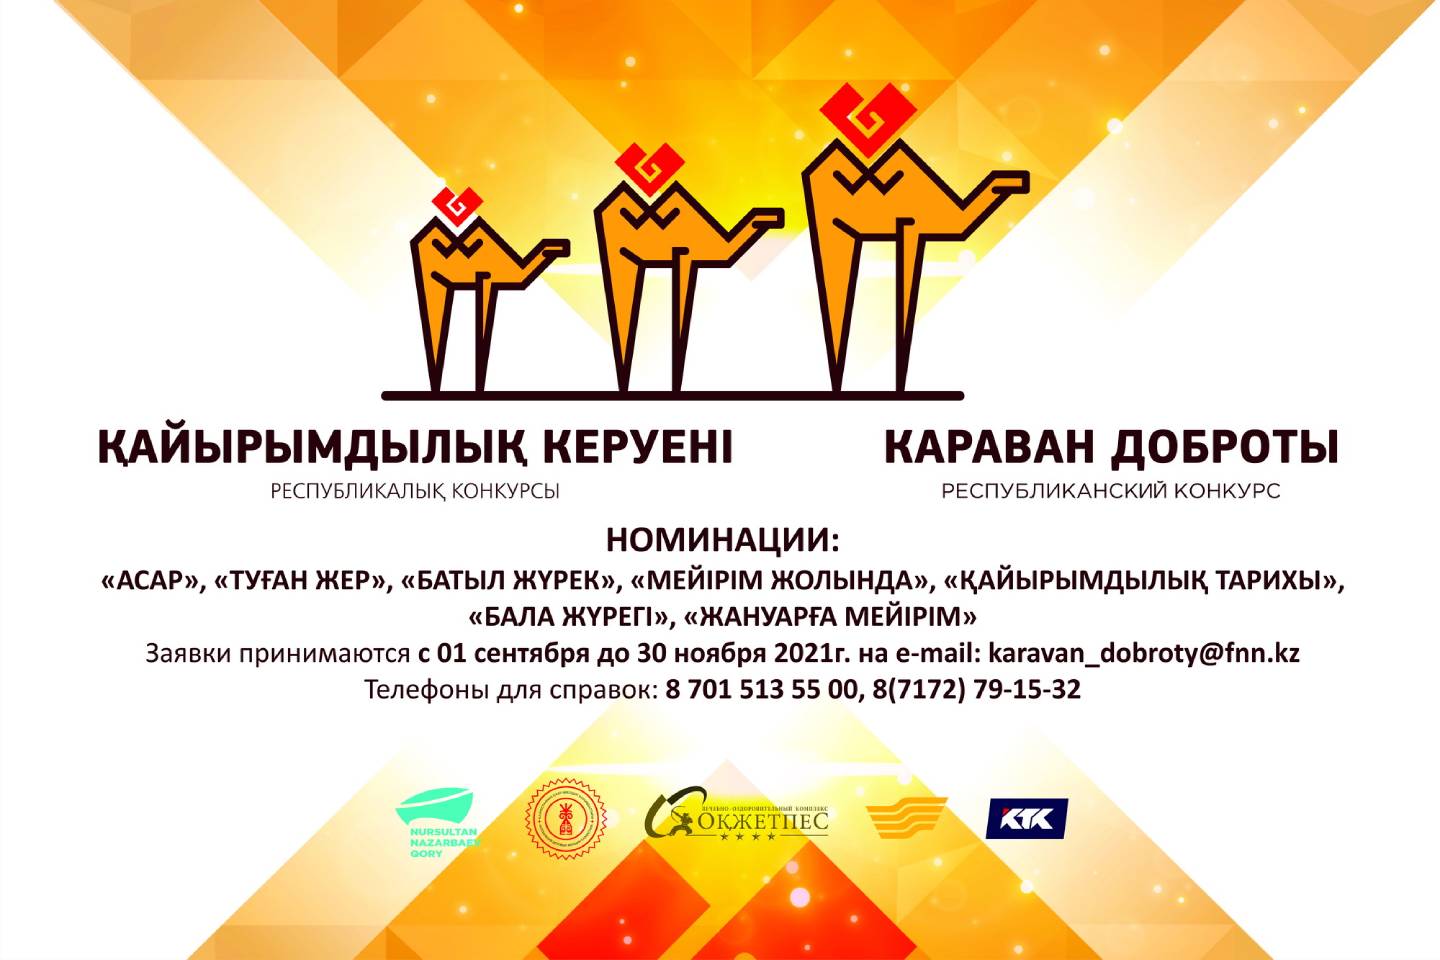 Новости Казахстана / Фонд Н. Назарбаева объявил о старте республиканского конкурса "Караван доброты"